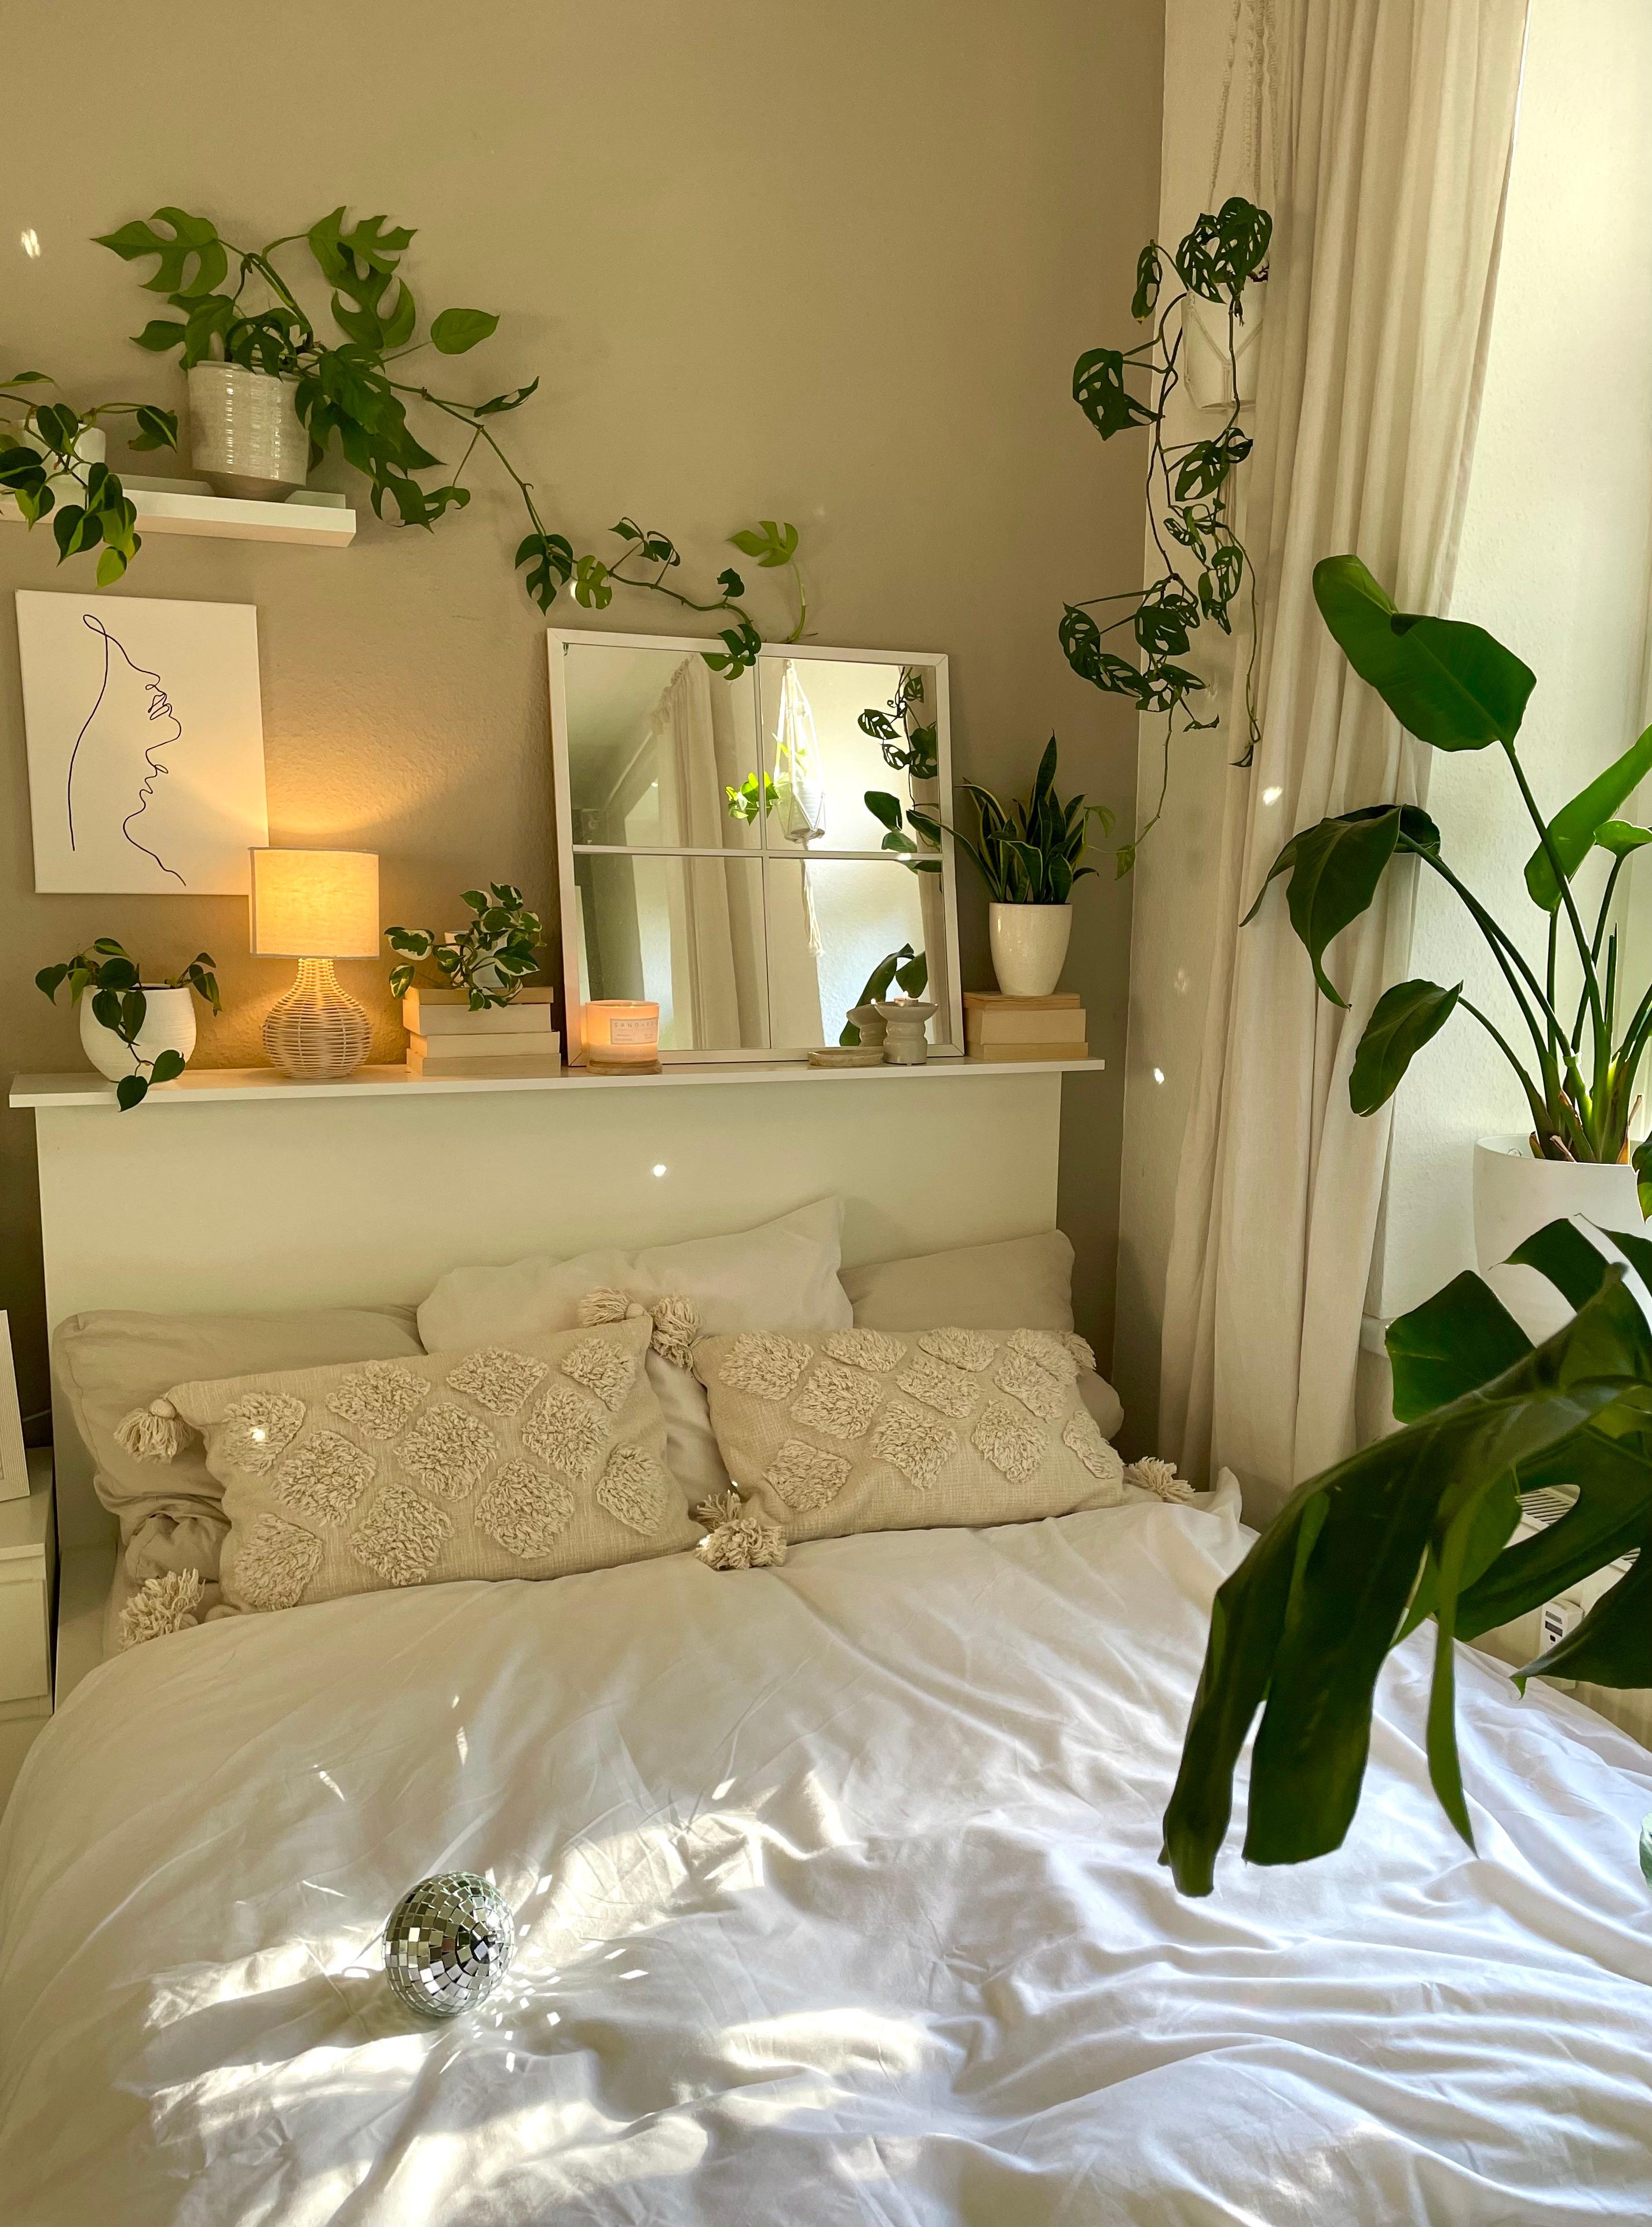 Plant Party 🪴

@apartmentbygina

#wolkenfeld #bettwäsche #schlafzimmer #bedroom #interior #plants #herbst